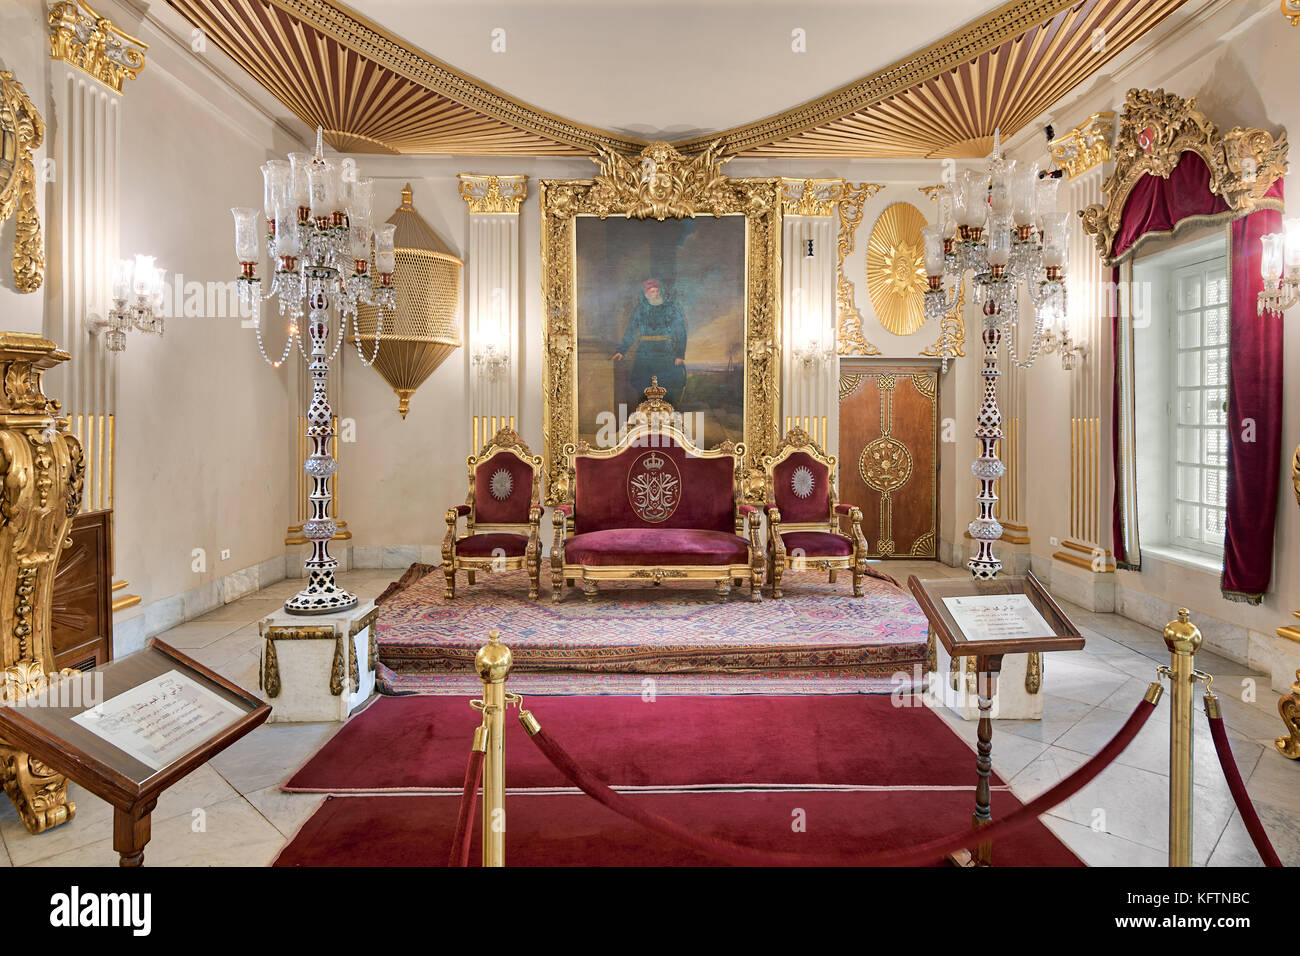 El Cairo, Egipto - Octubre 21, 2017: en el Salón del Trono del Palacio manial del príncipe Mohammed Ali tewfik rojo chapado en oro con sillones, lámparas de piso de antigüedades, ornat Foto de stock